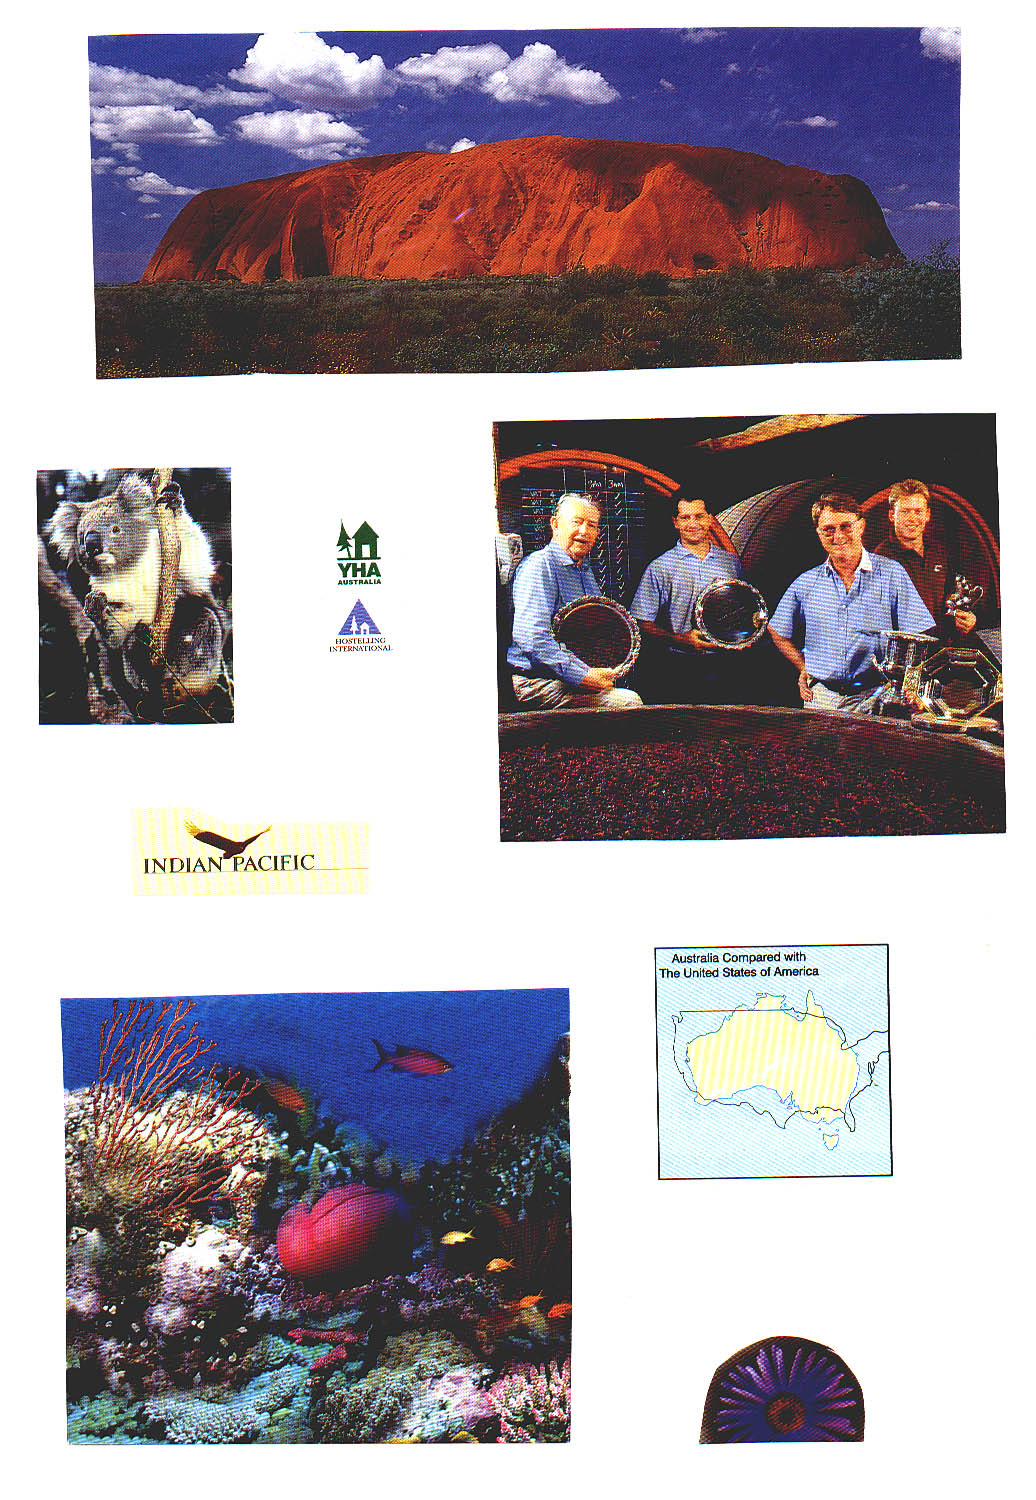 Australia 1999